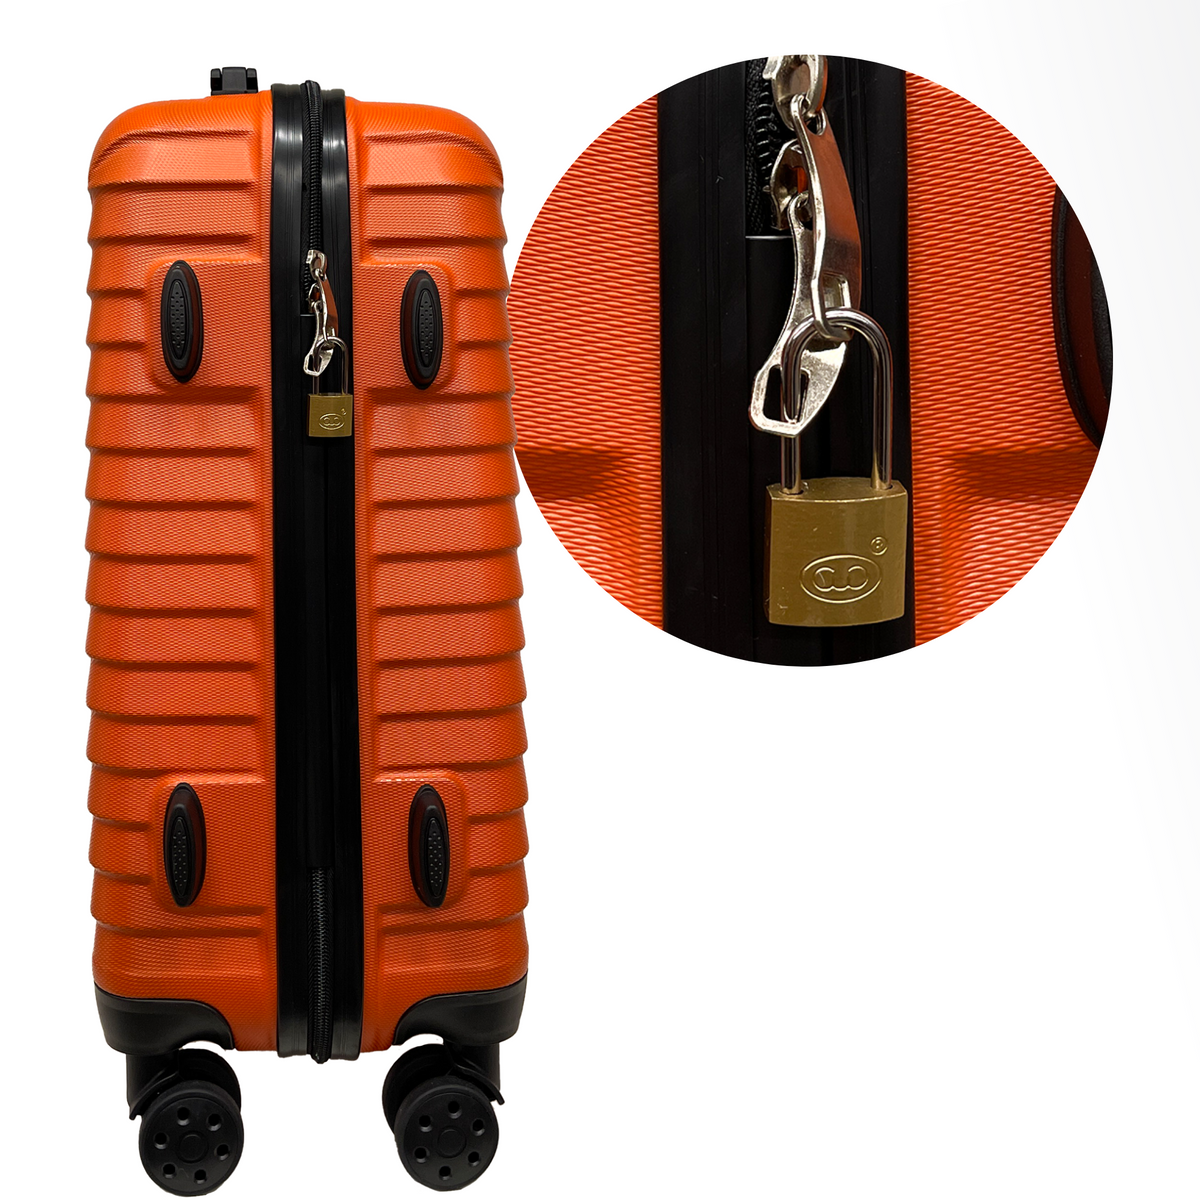 Κλειδαριά μήκους 25 χιλιοστών με 2 κλειδιά - Ασφάλεια για βαλίτσες, αποσκευές, τσάντα ταξιδιού και σακίδια